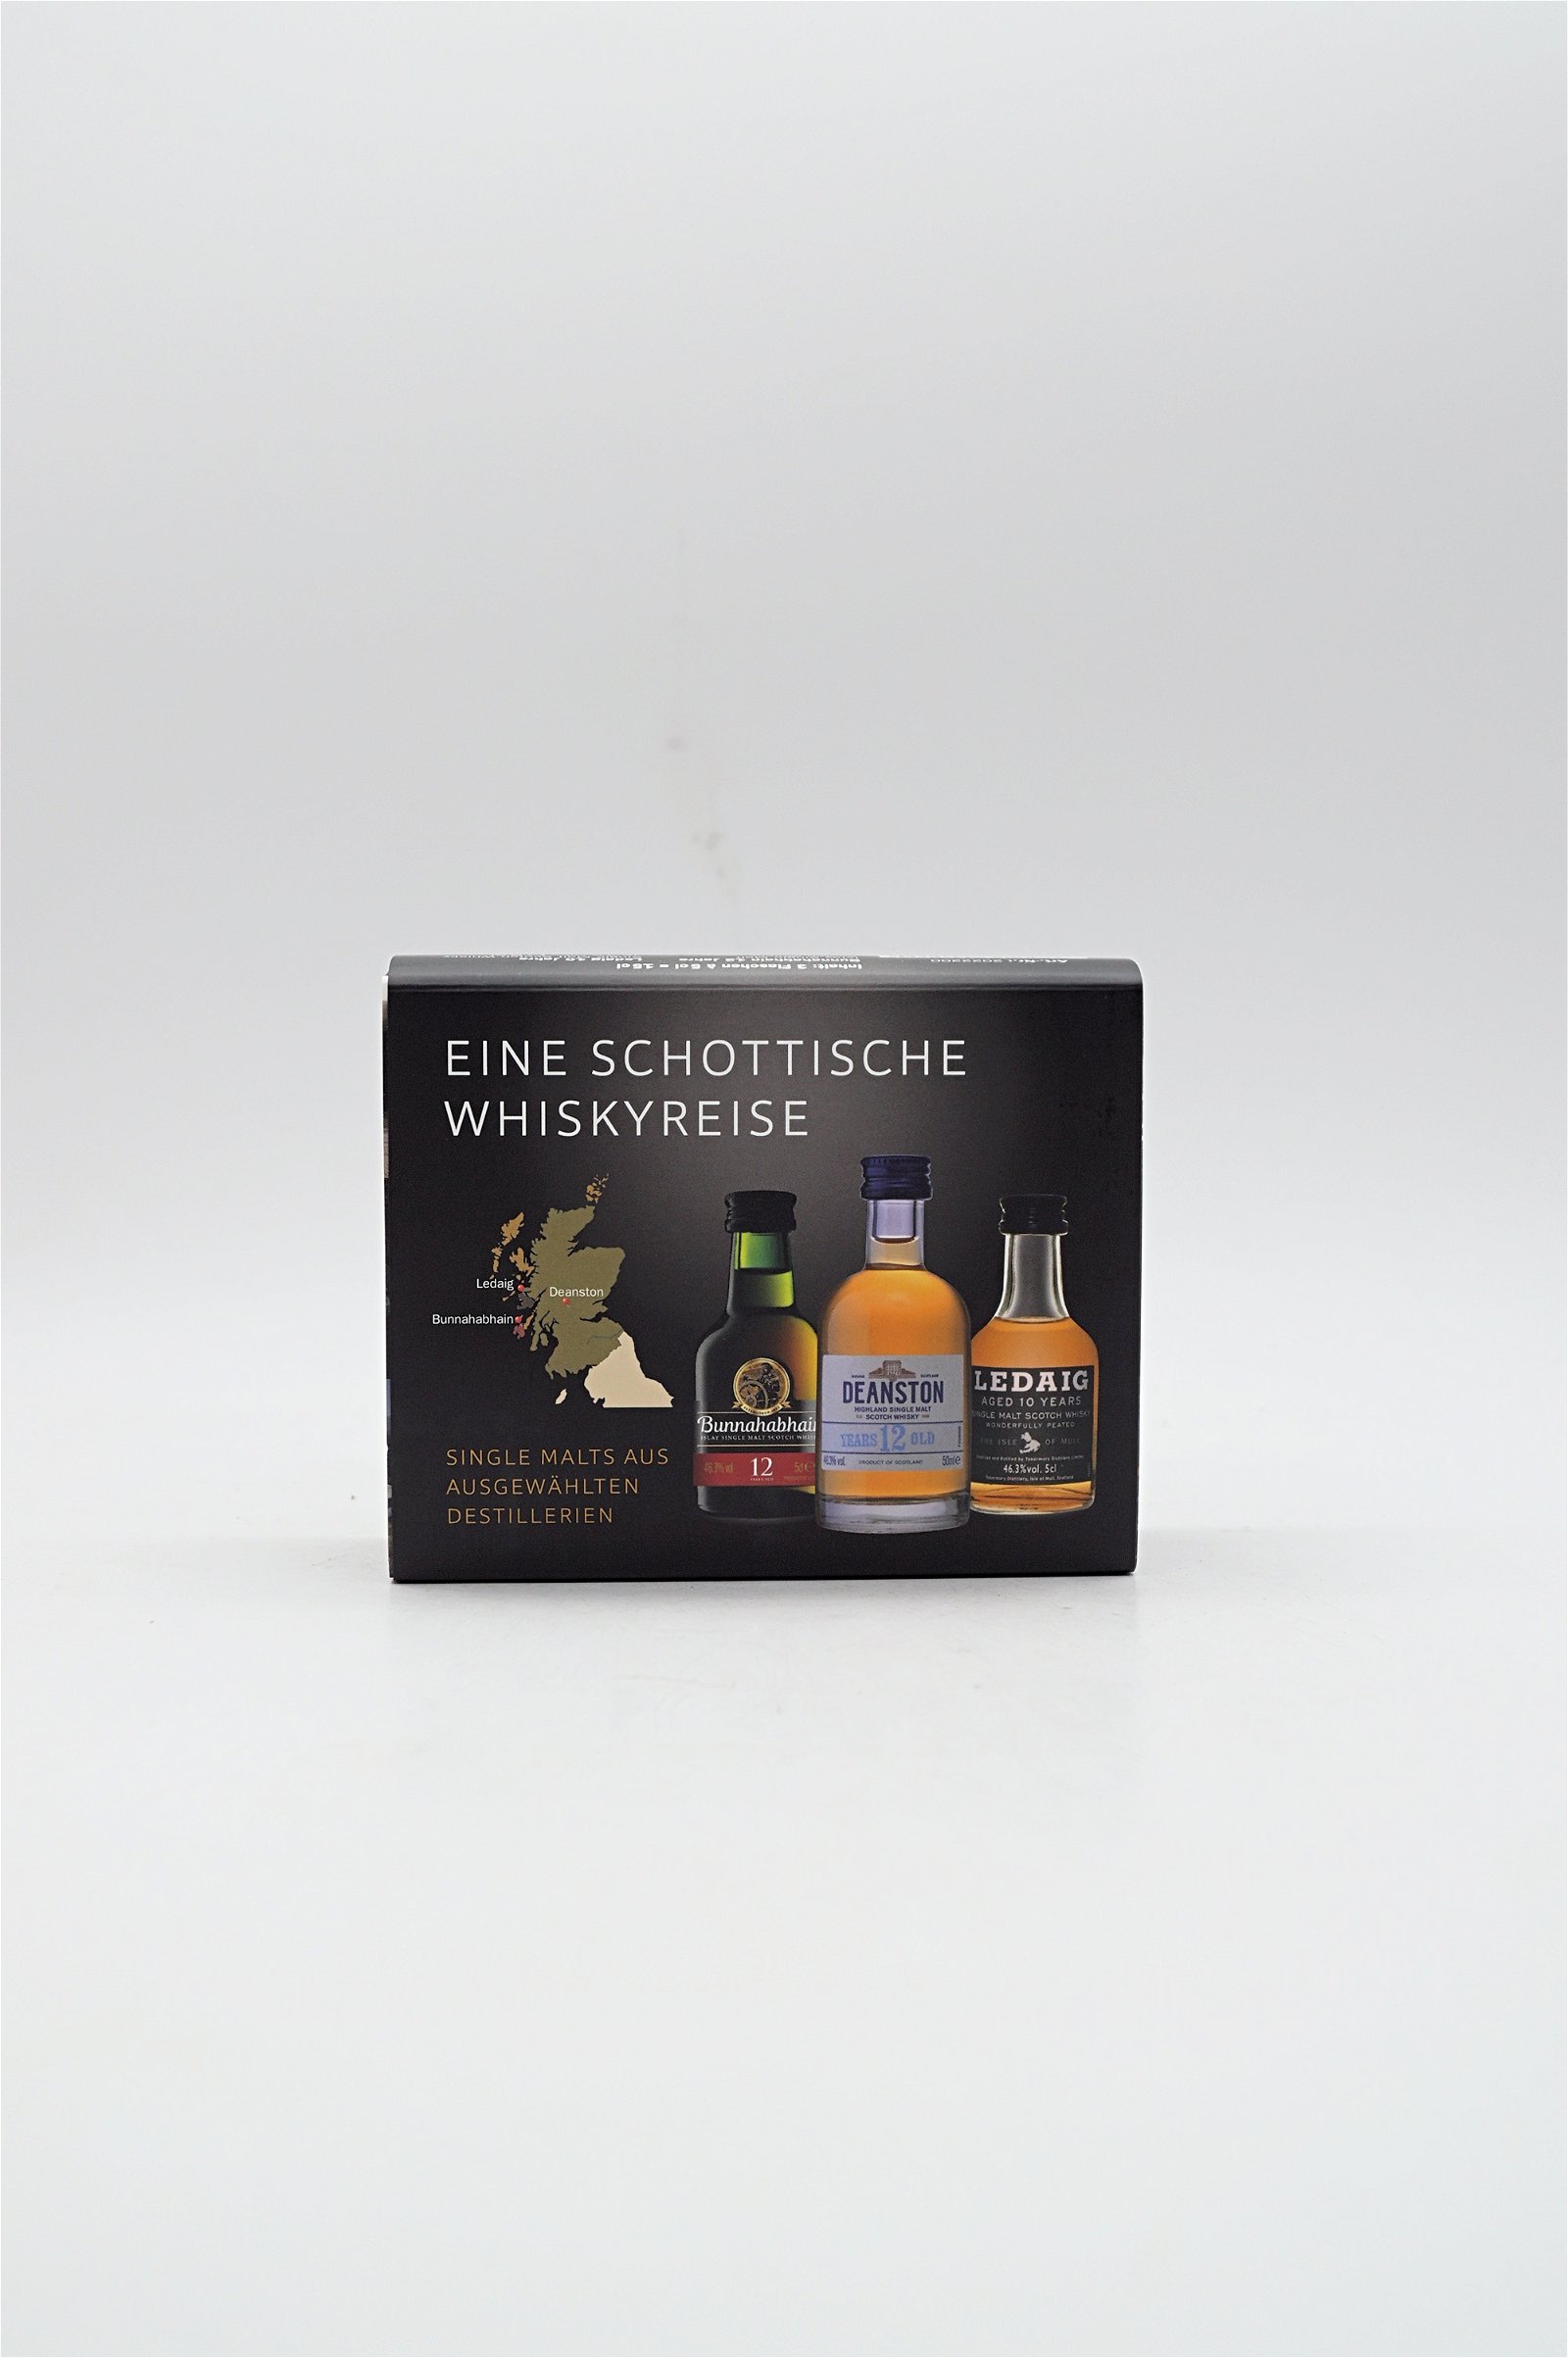 Miniaturen Collection Eine Schottische Whiskyreise Samples 3x50 ml